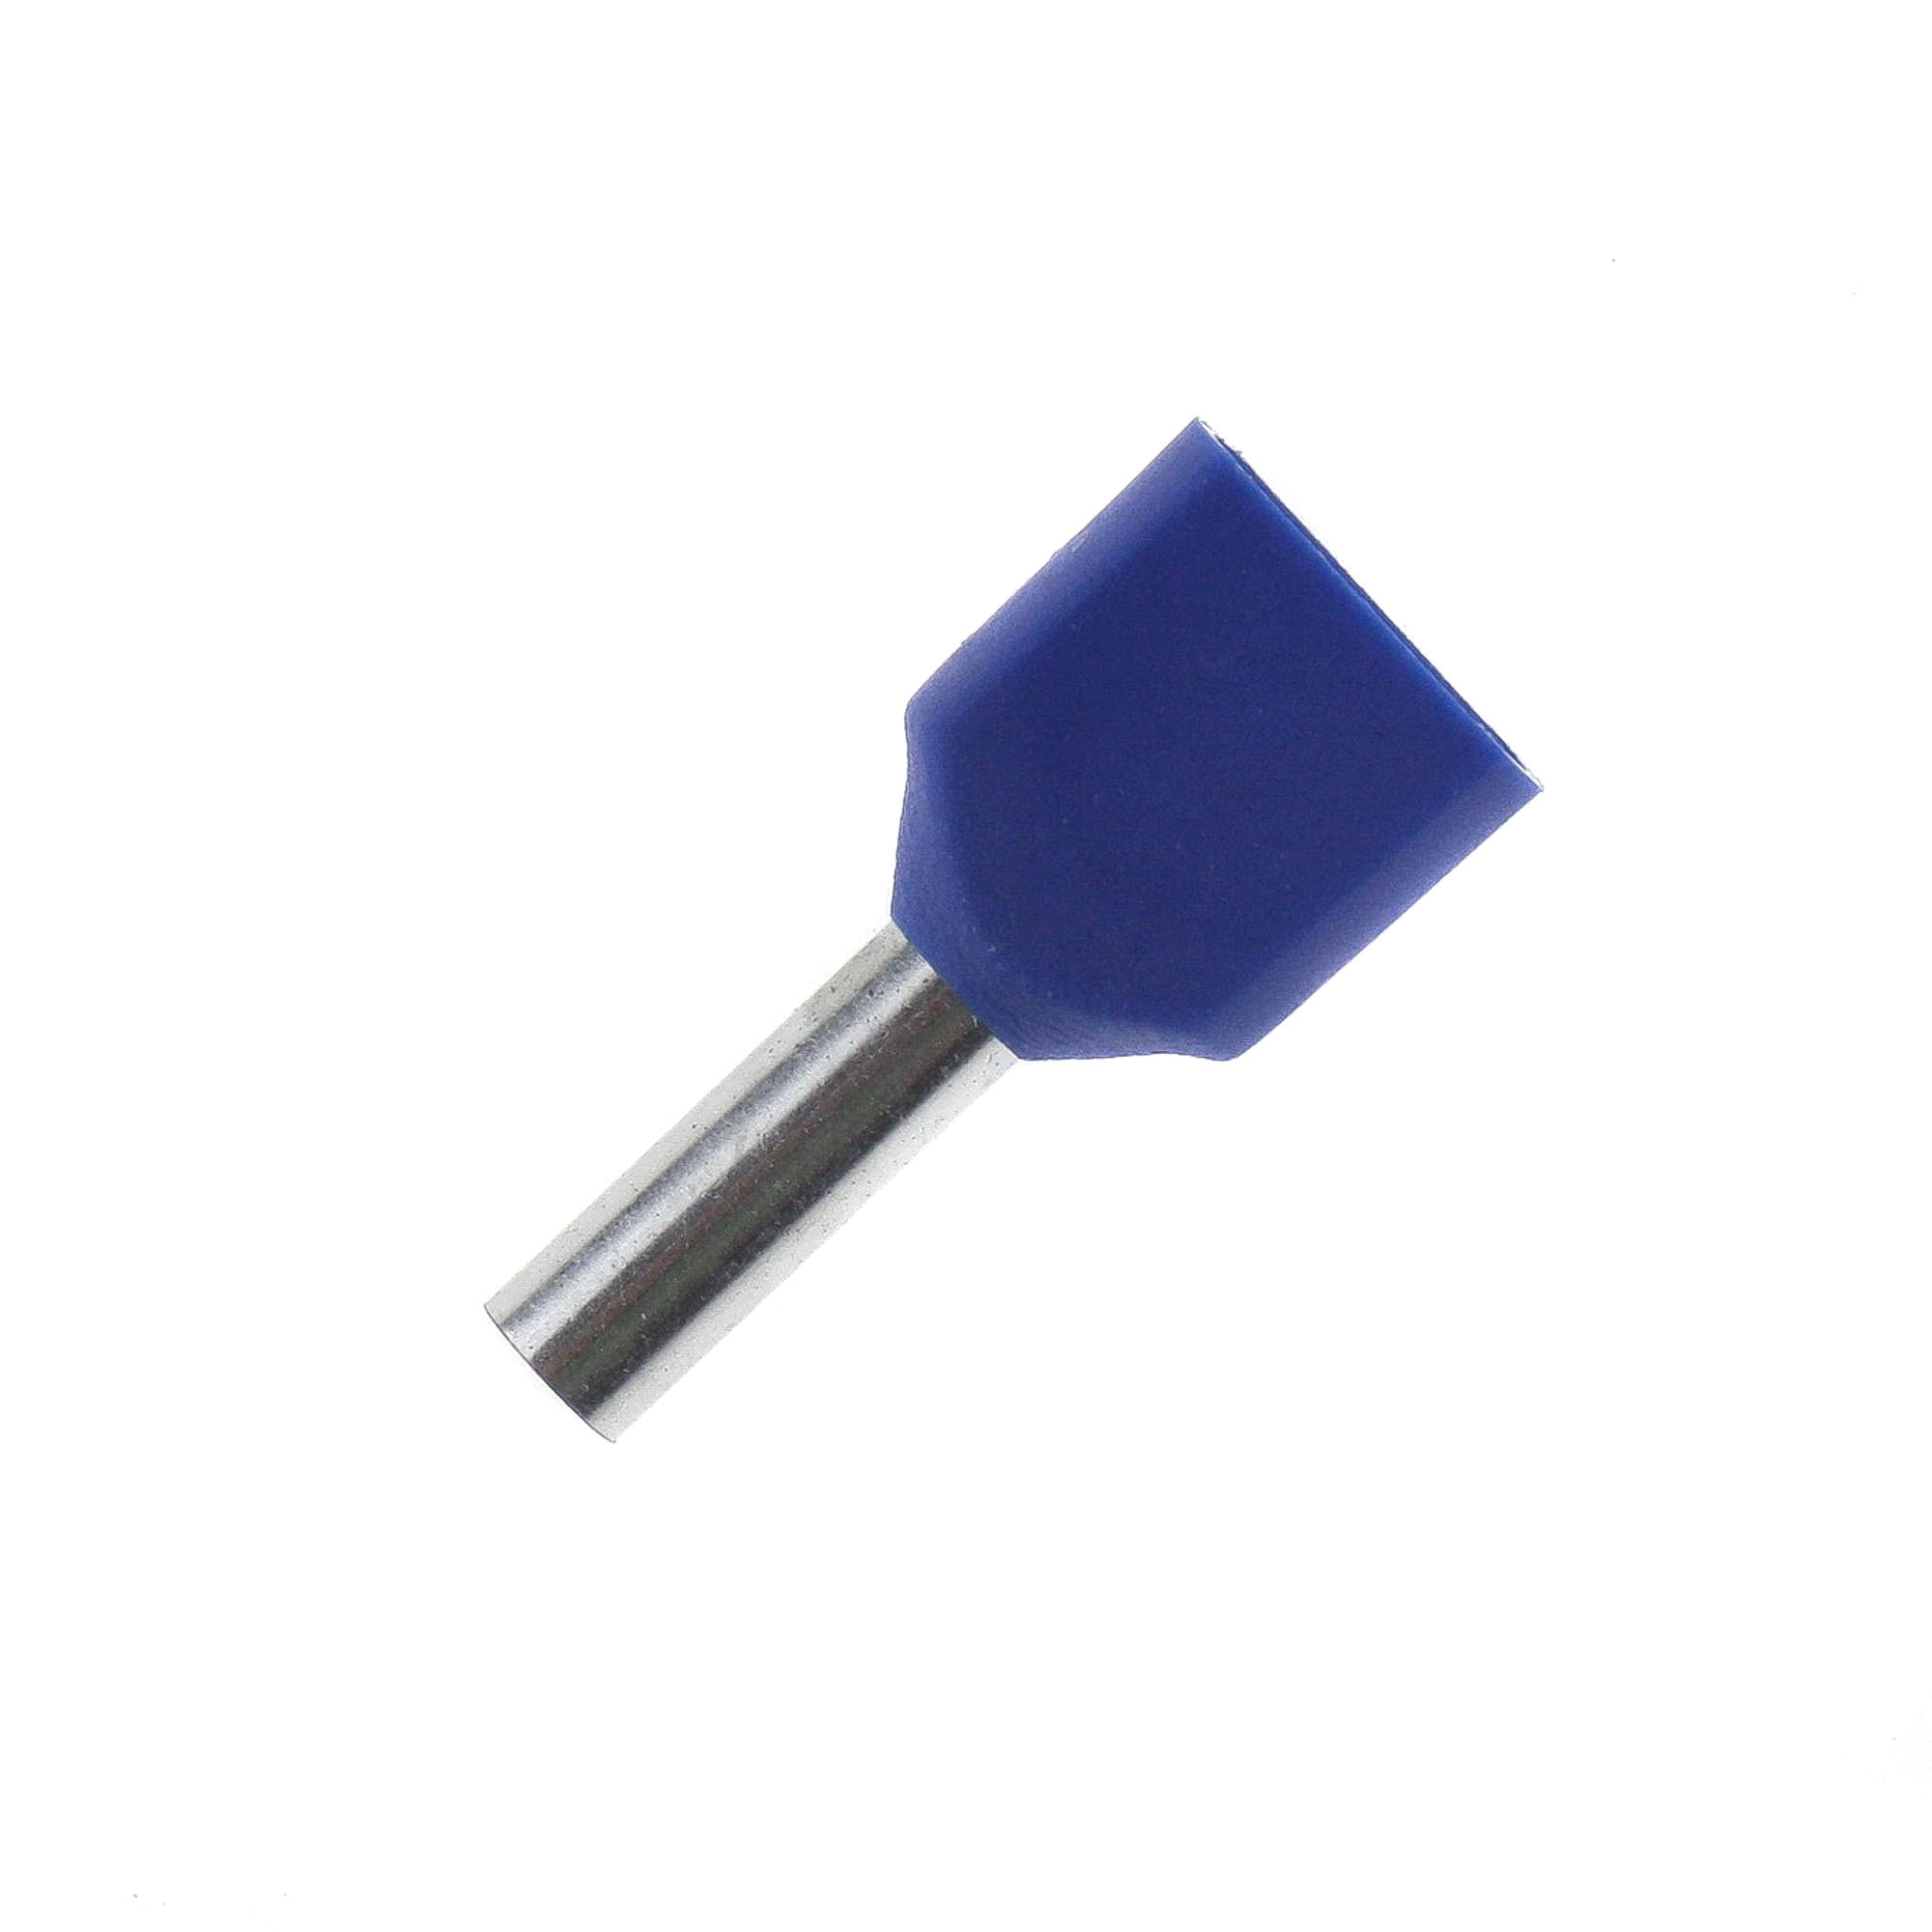 Zwillingaderendhülsen 2x2,5mm², blau, 100 Stk.